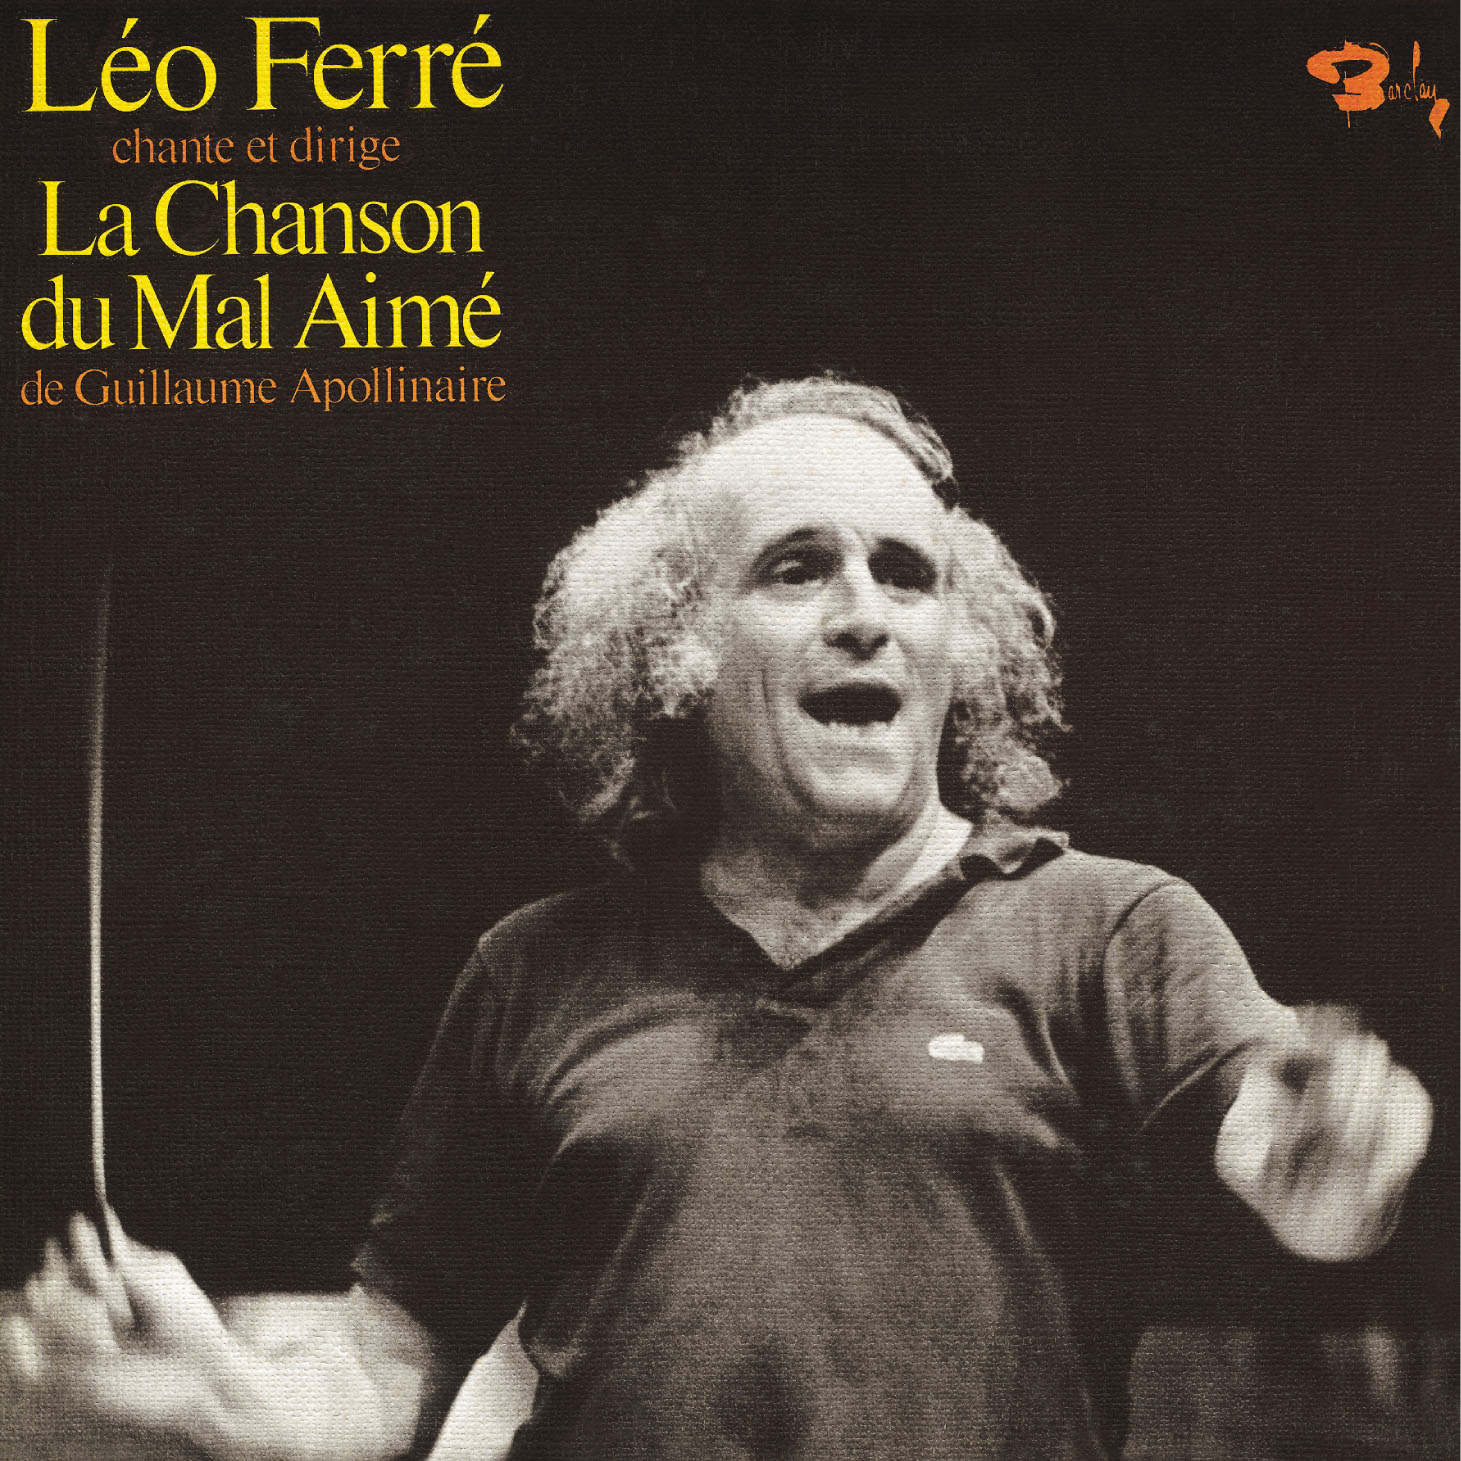 Léo Ferré - La chanson du mal aimé